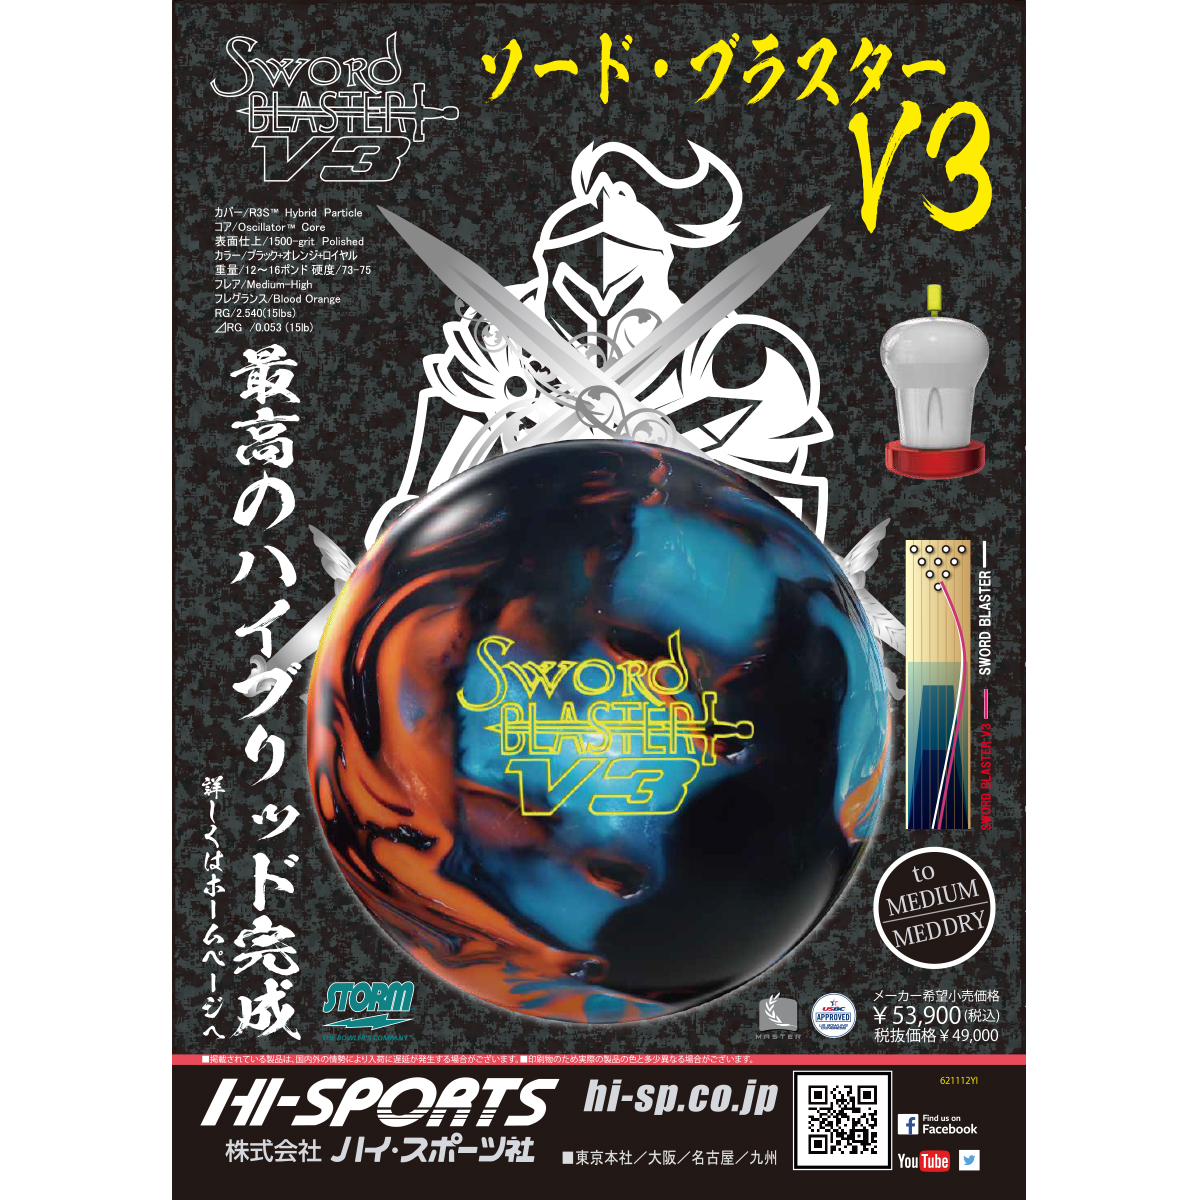 ストーム)ソード・ブラスターV3 [HISP] - 24,255円 : ボウリング用品 